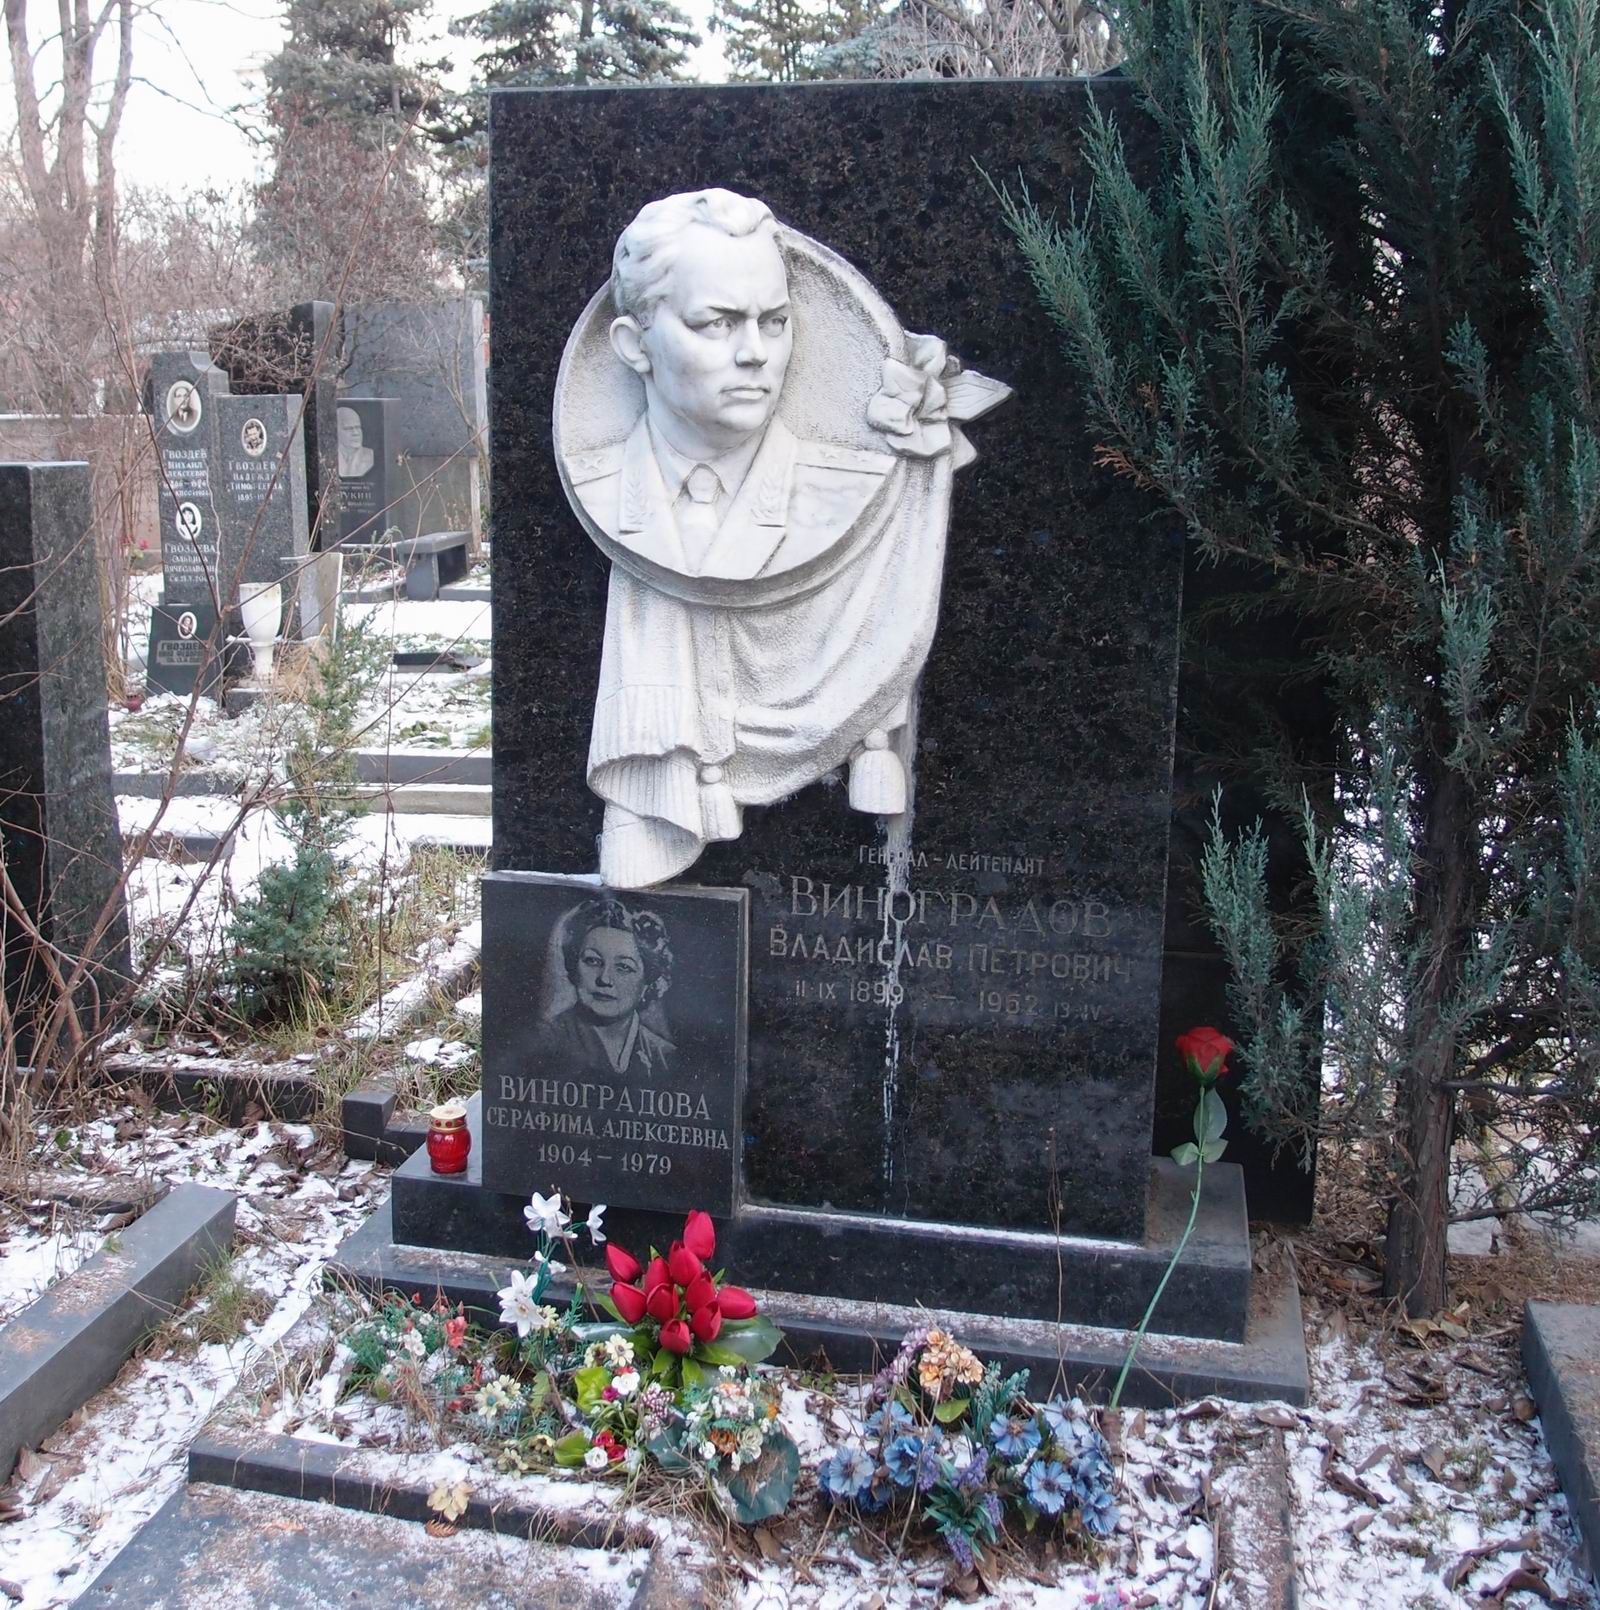 Памятник на могиле Виноградову В.П. (1899–1962), на Новодевичьем кладбище (8–15–8). Нажмите левую кнопку мыши чтобы увидеть фрагмент памятника.